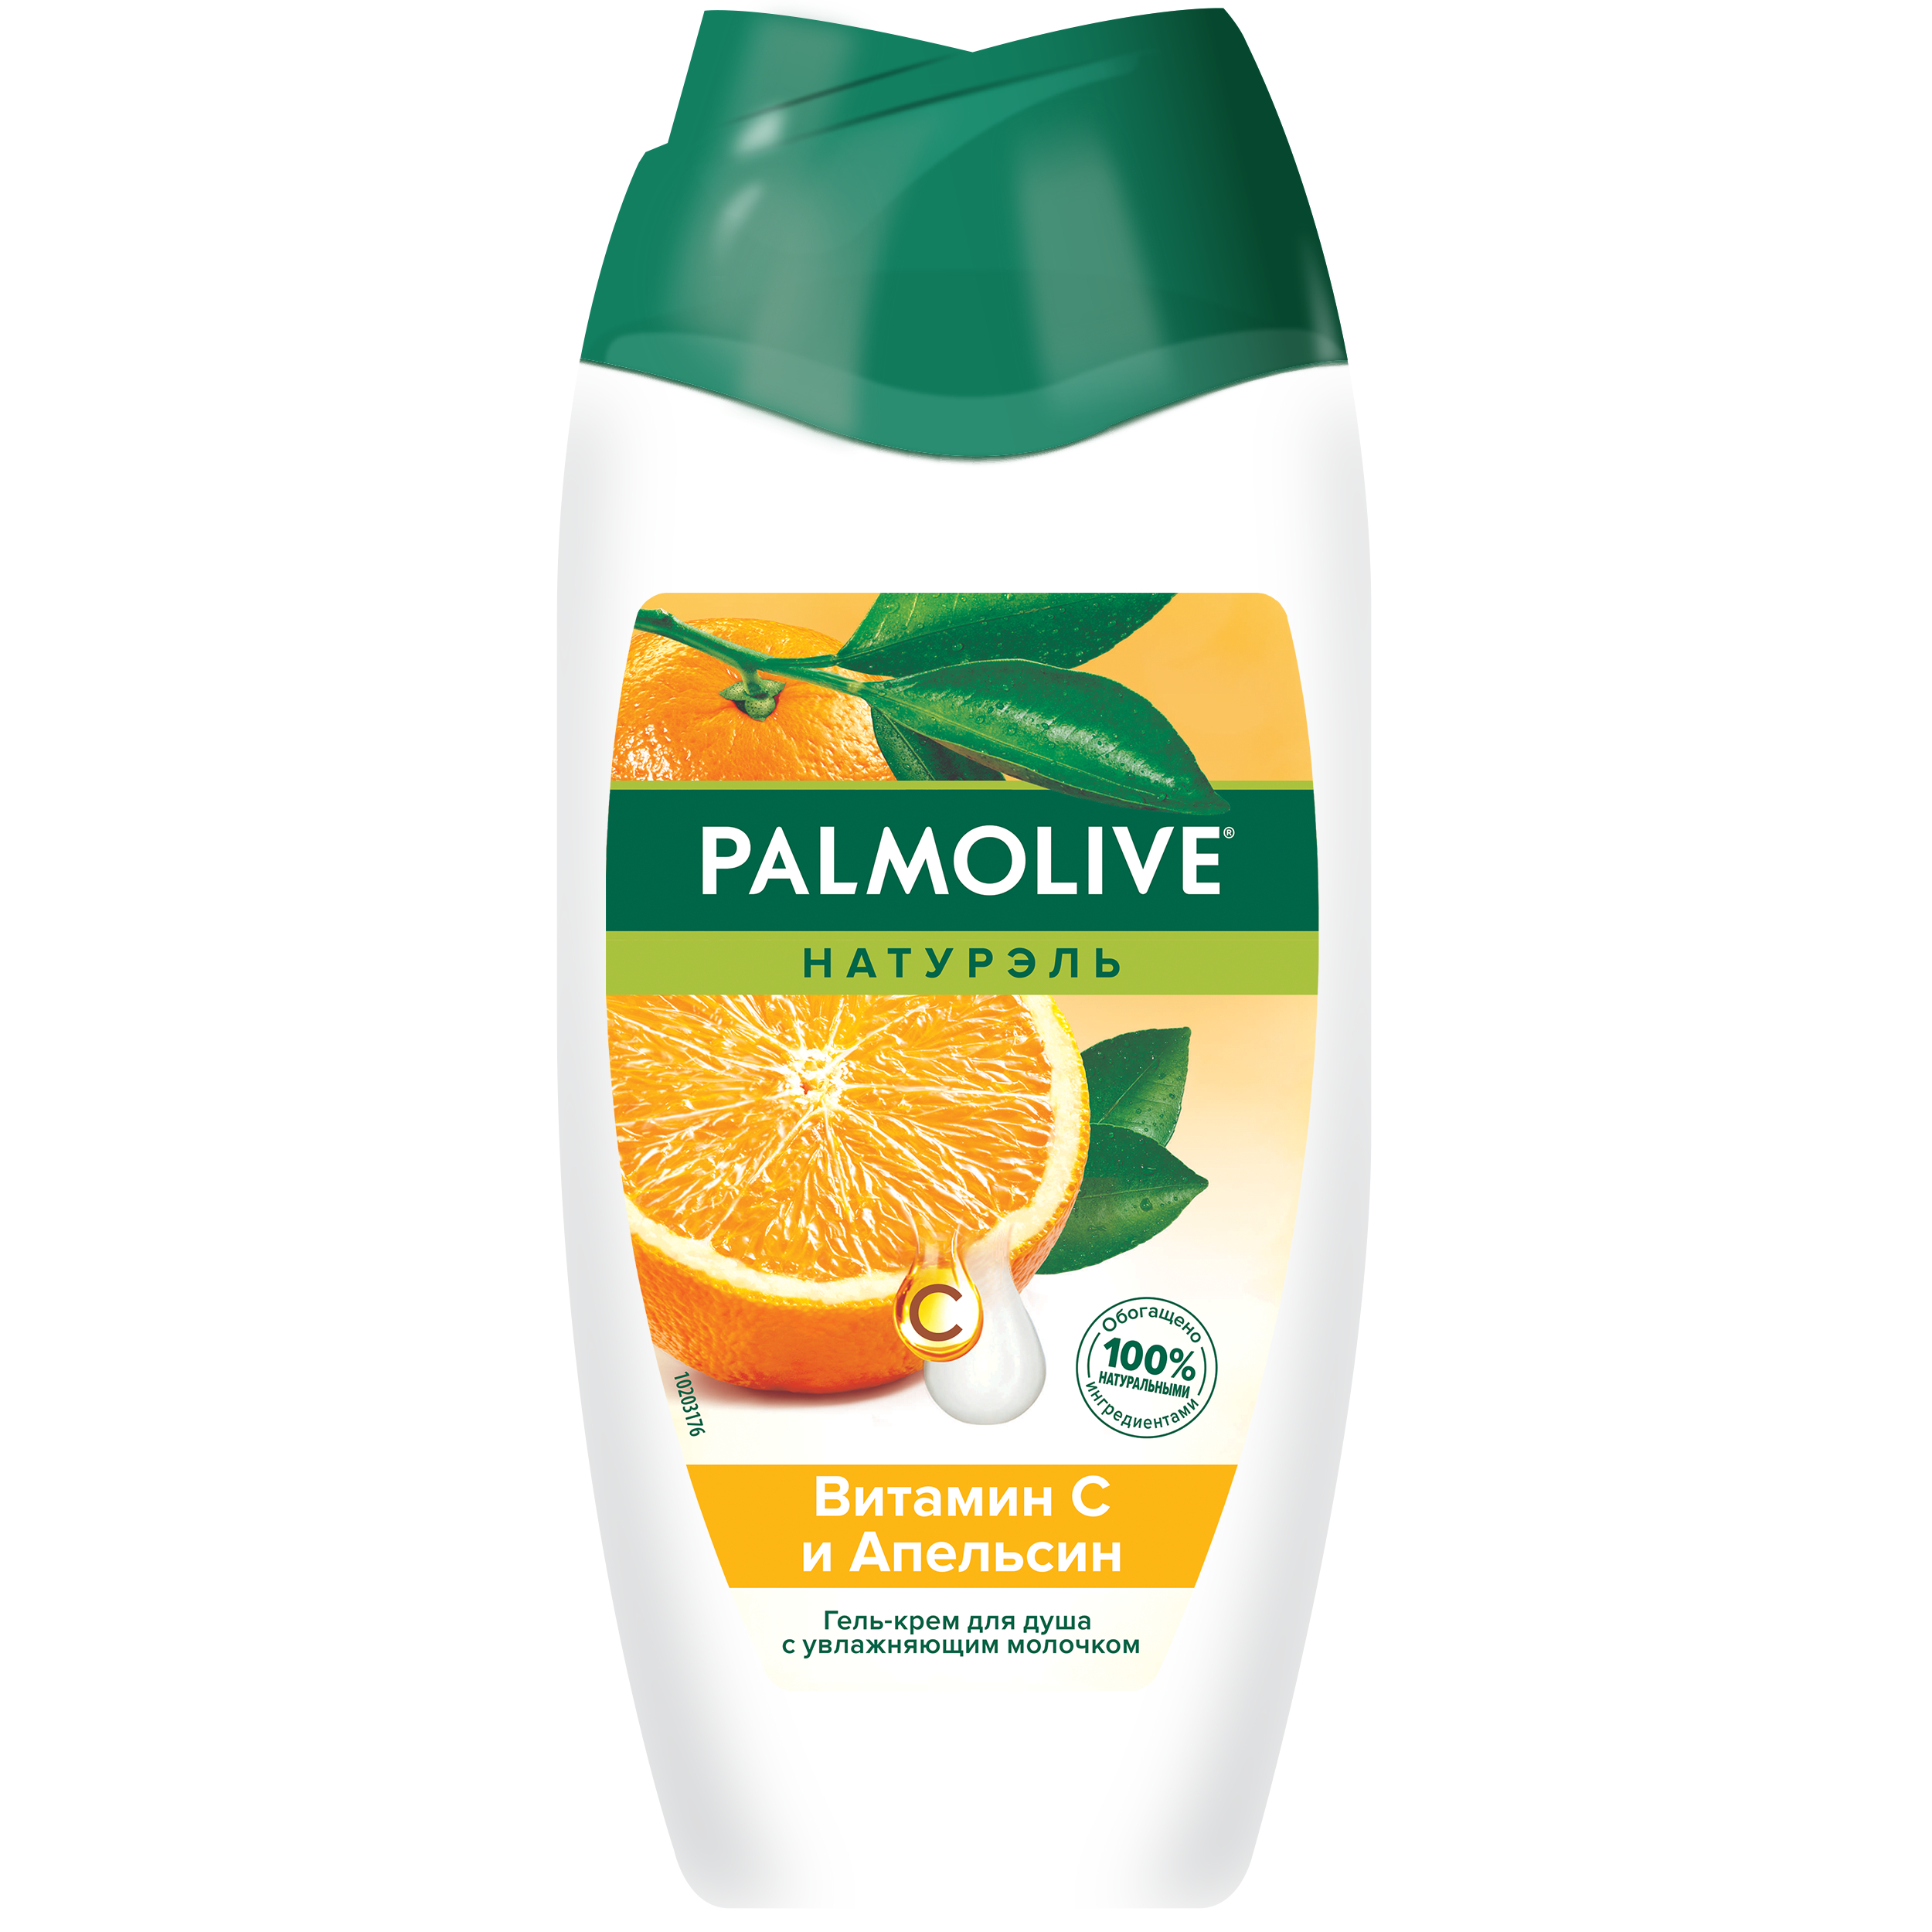 Гель-крем для душа Palmolive Натурэль витамин С и апельсин, с увлажняющим молочком 250 мл